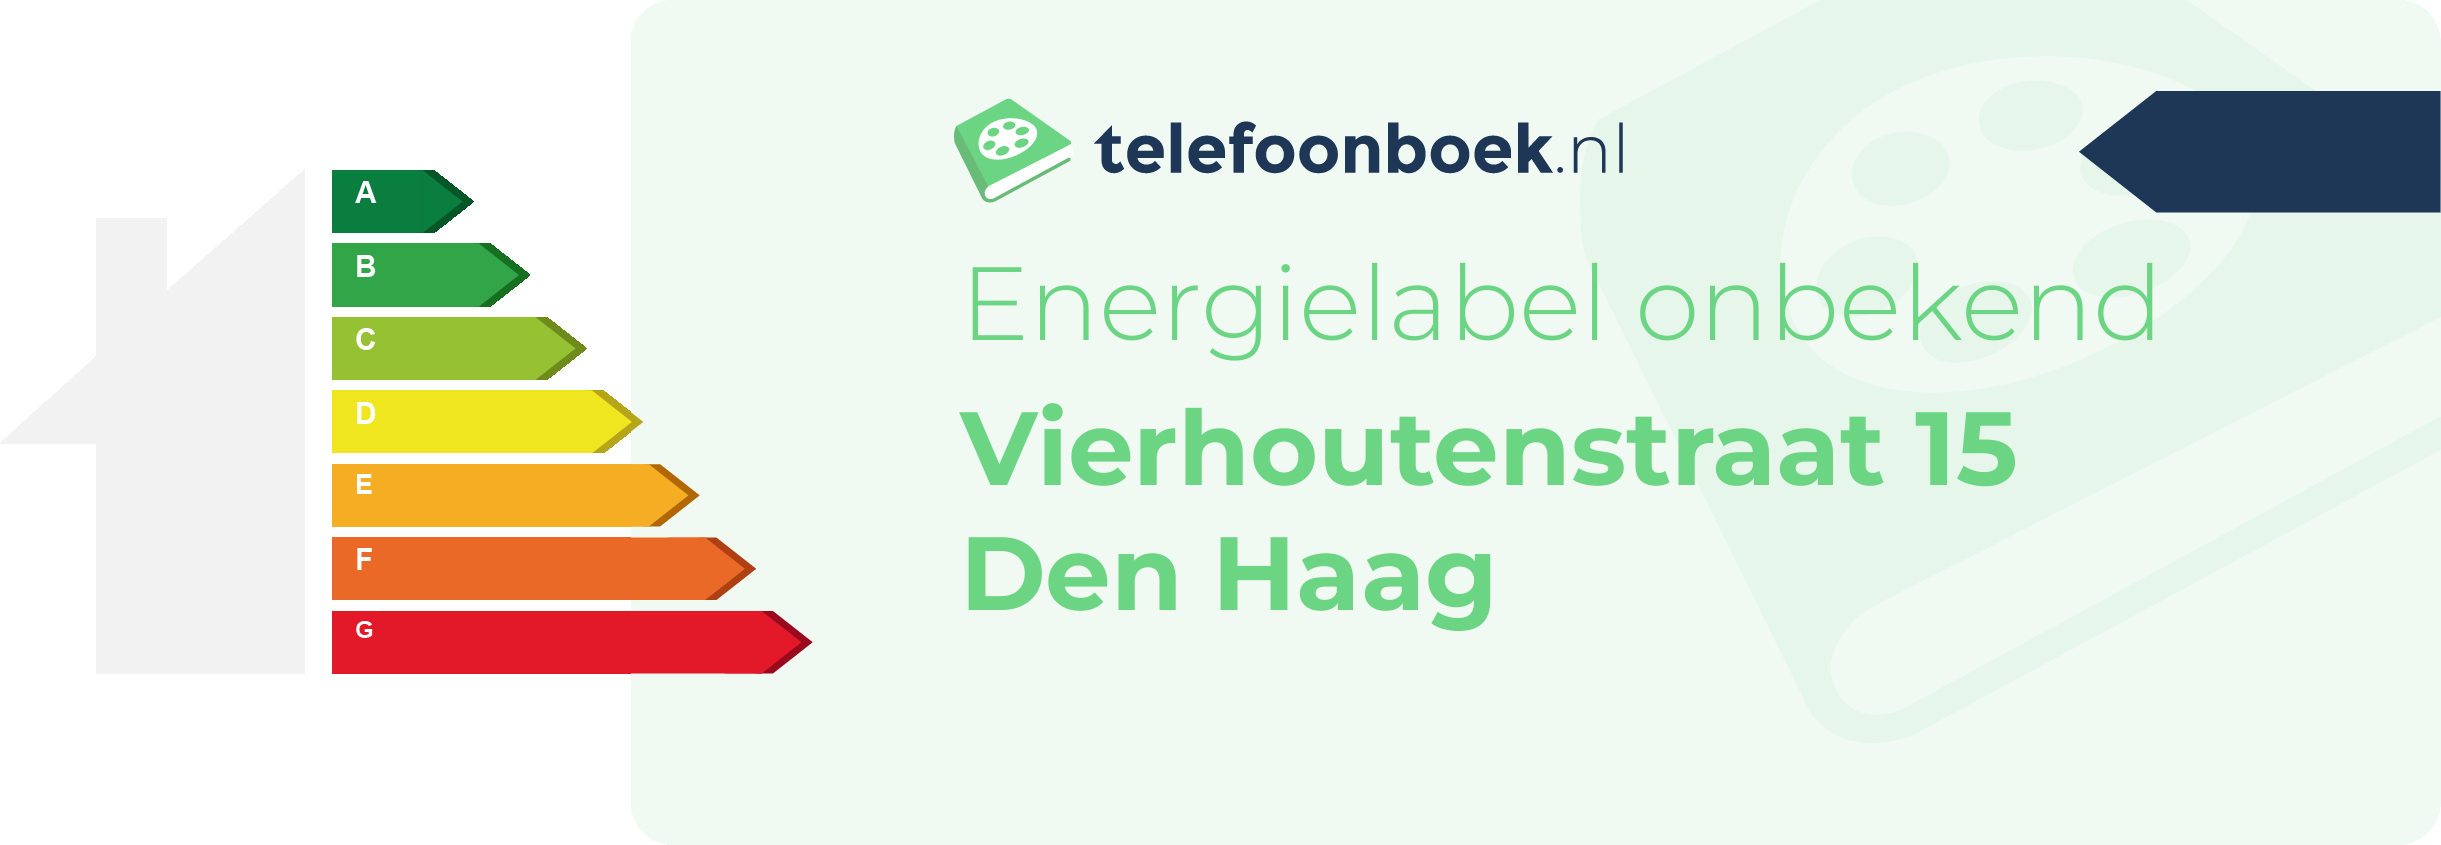 Energielabel Vierhoutenstraat 15 Den Haag